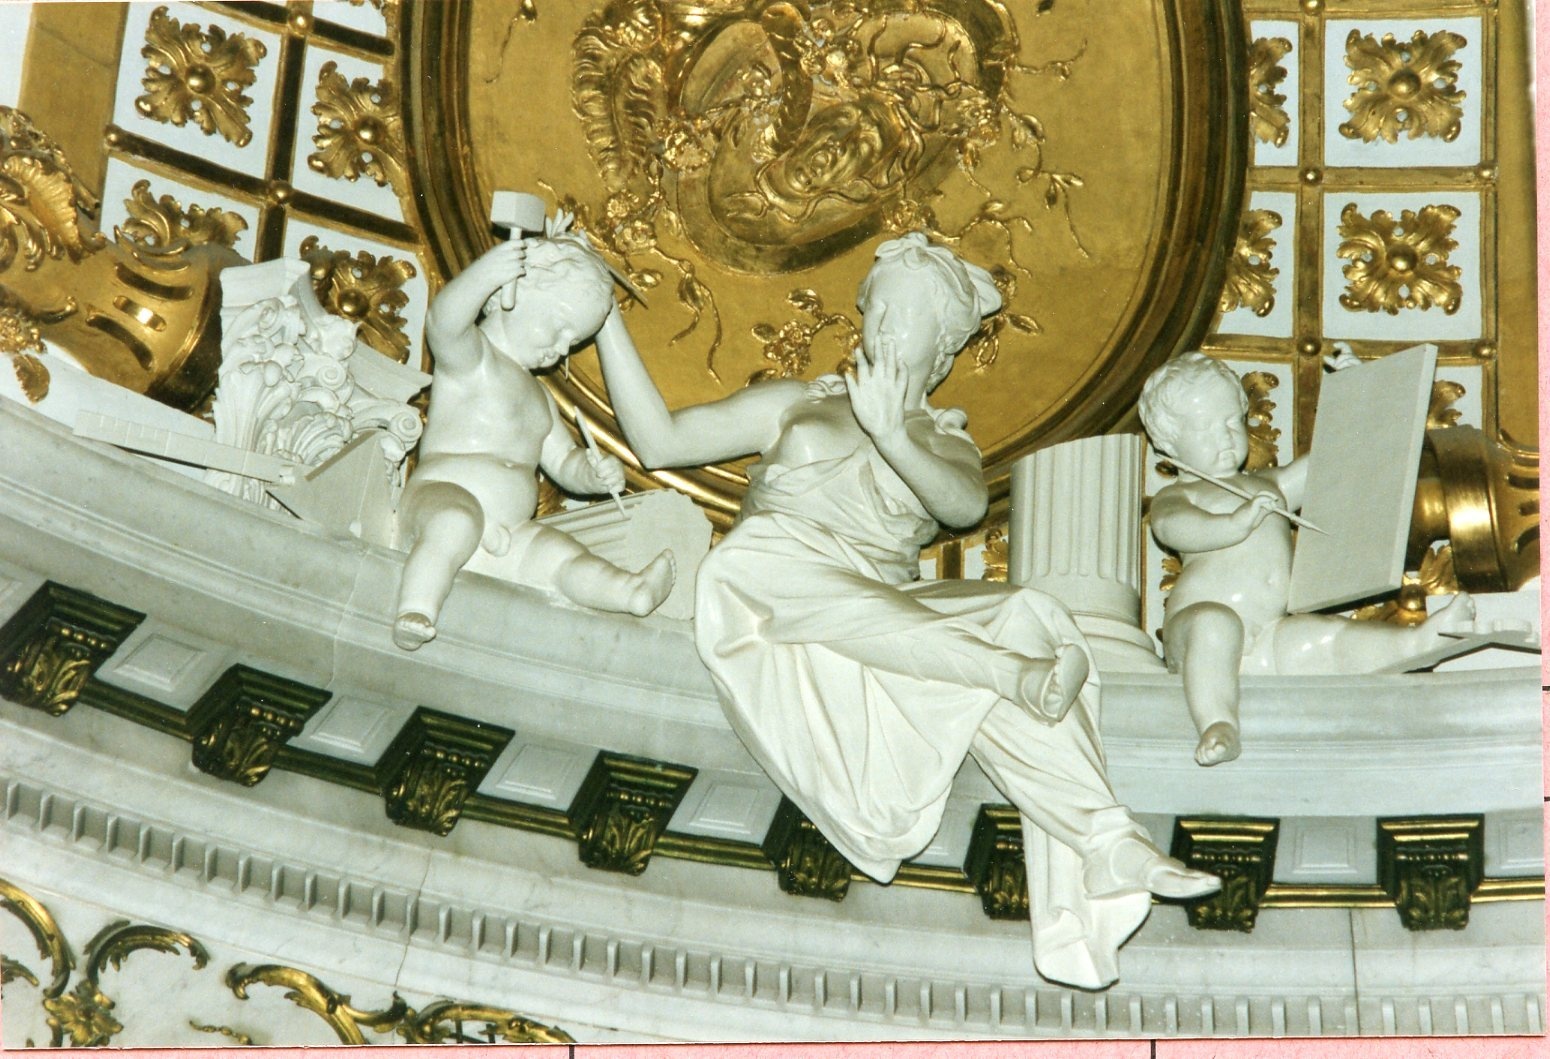 Ebenhecht, Georg Franz: Allegorie "Die Architektur", 1745-1747, Stuck, Skulpt.slg. 235. (Stiftung Preußische Schlösser und Gärten Berlin-Brandenburg CC BY-NC-SA)